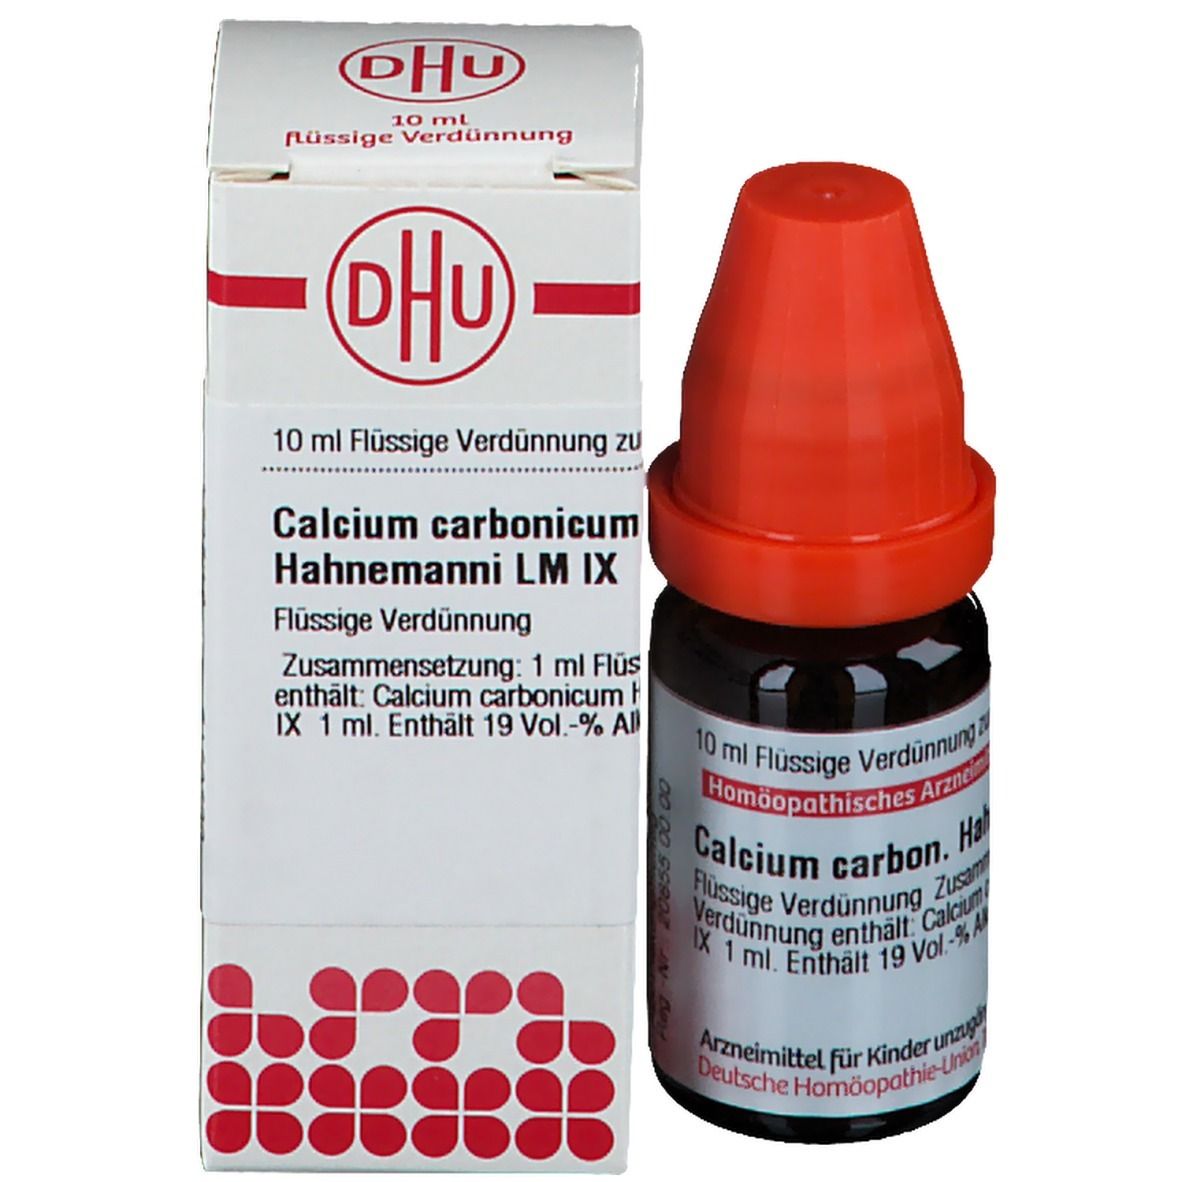 DHU Calcium Carbonicum Hahnemanni LM IX